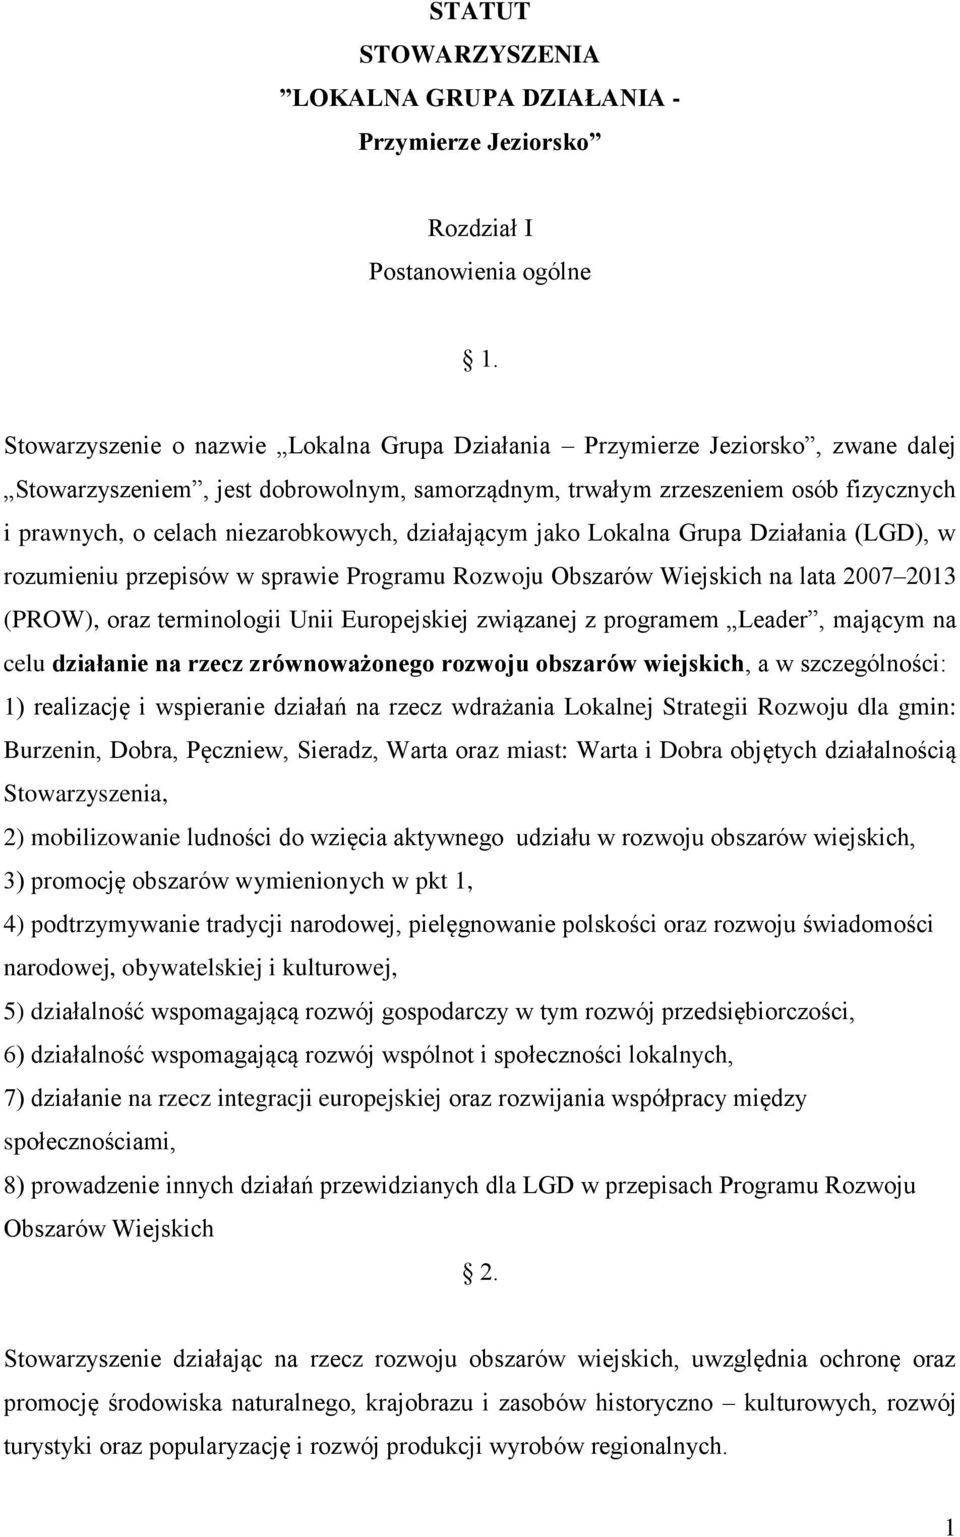 niezarobkowych, działającym jako Lokalna Grupa Działania (LGD), w rozumieniu przepisów w sprawie Programu Rozwoju Obszarów Wiejskich na lata 2007 2013 (PROW), oraz terminologii Unii Europejskiej